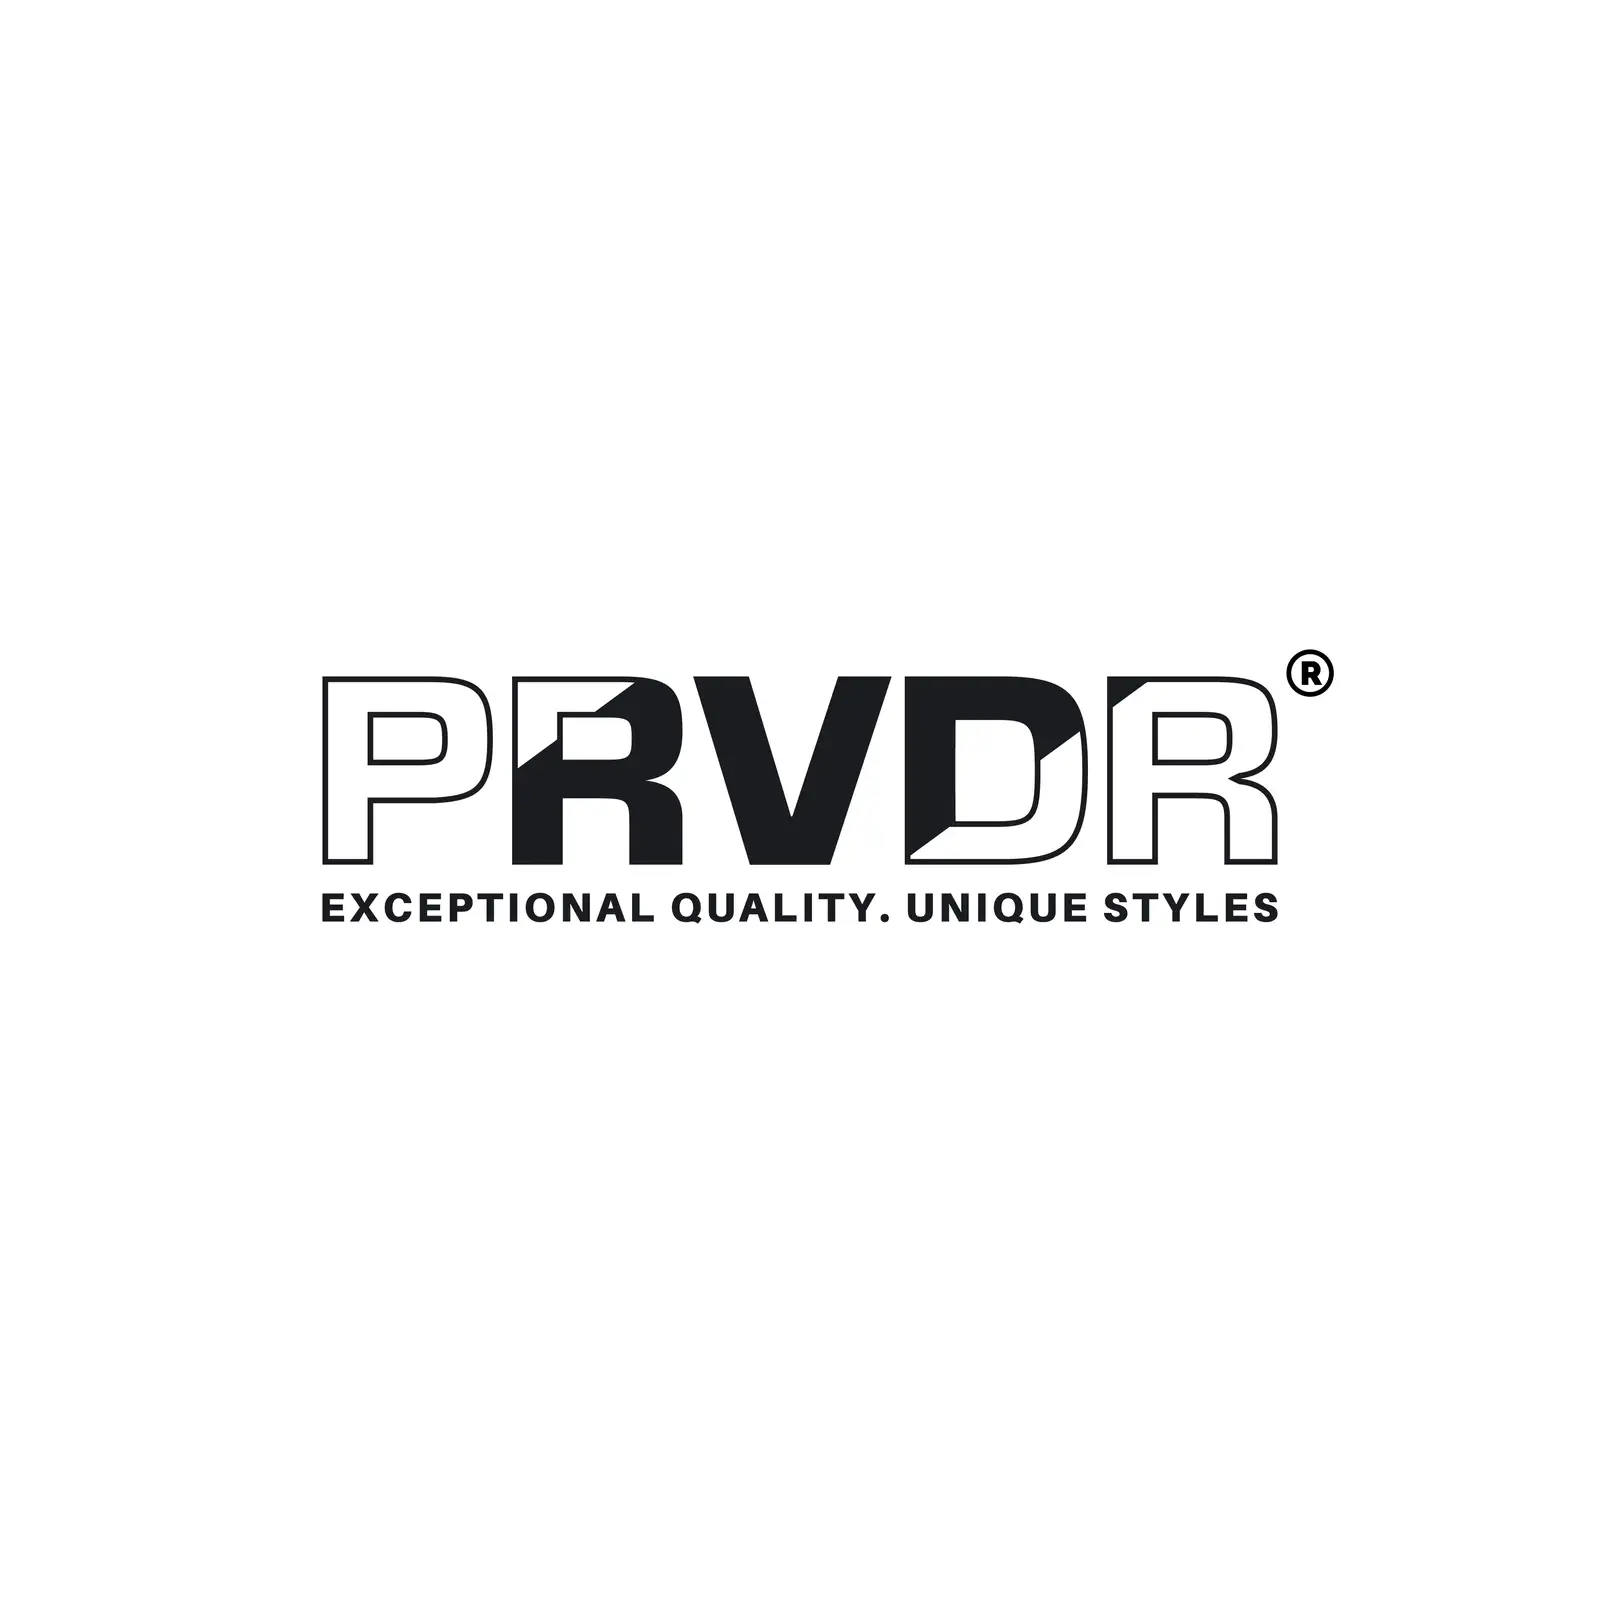 PRVDR logo